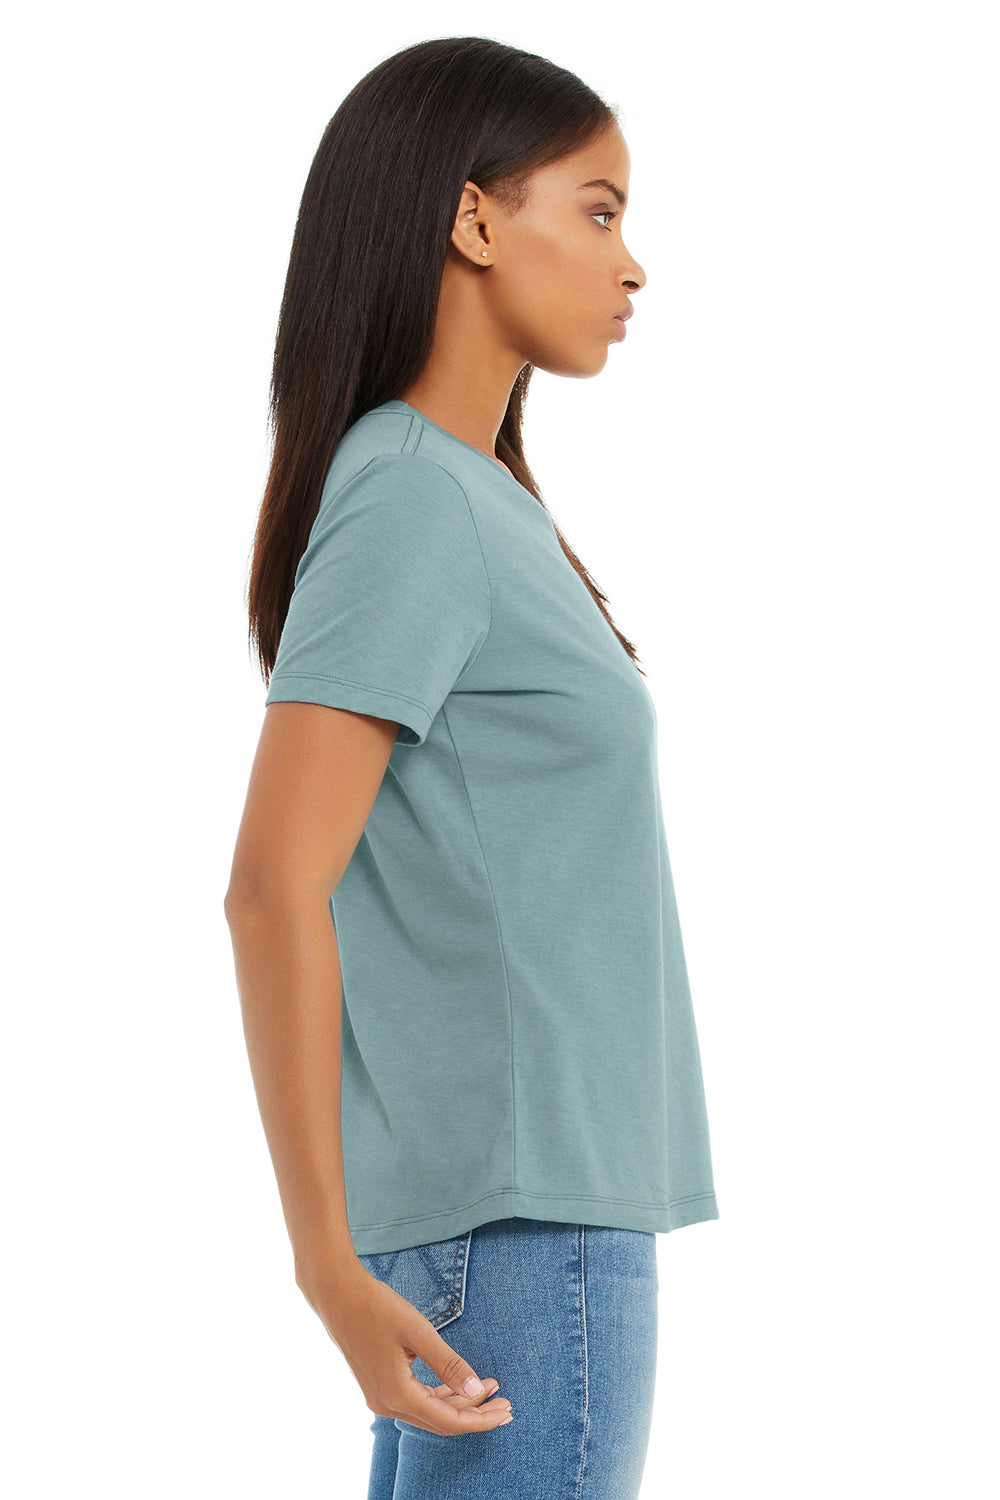 Bella + Canvas BC6400CVC/6400CVC Womens CVC Short Sleeve Crewneck T-Shirt Heather Blue Lagoon Model Side